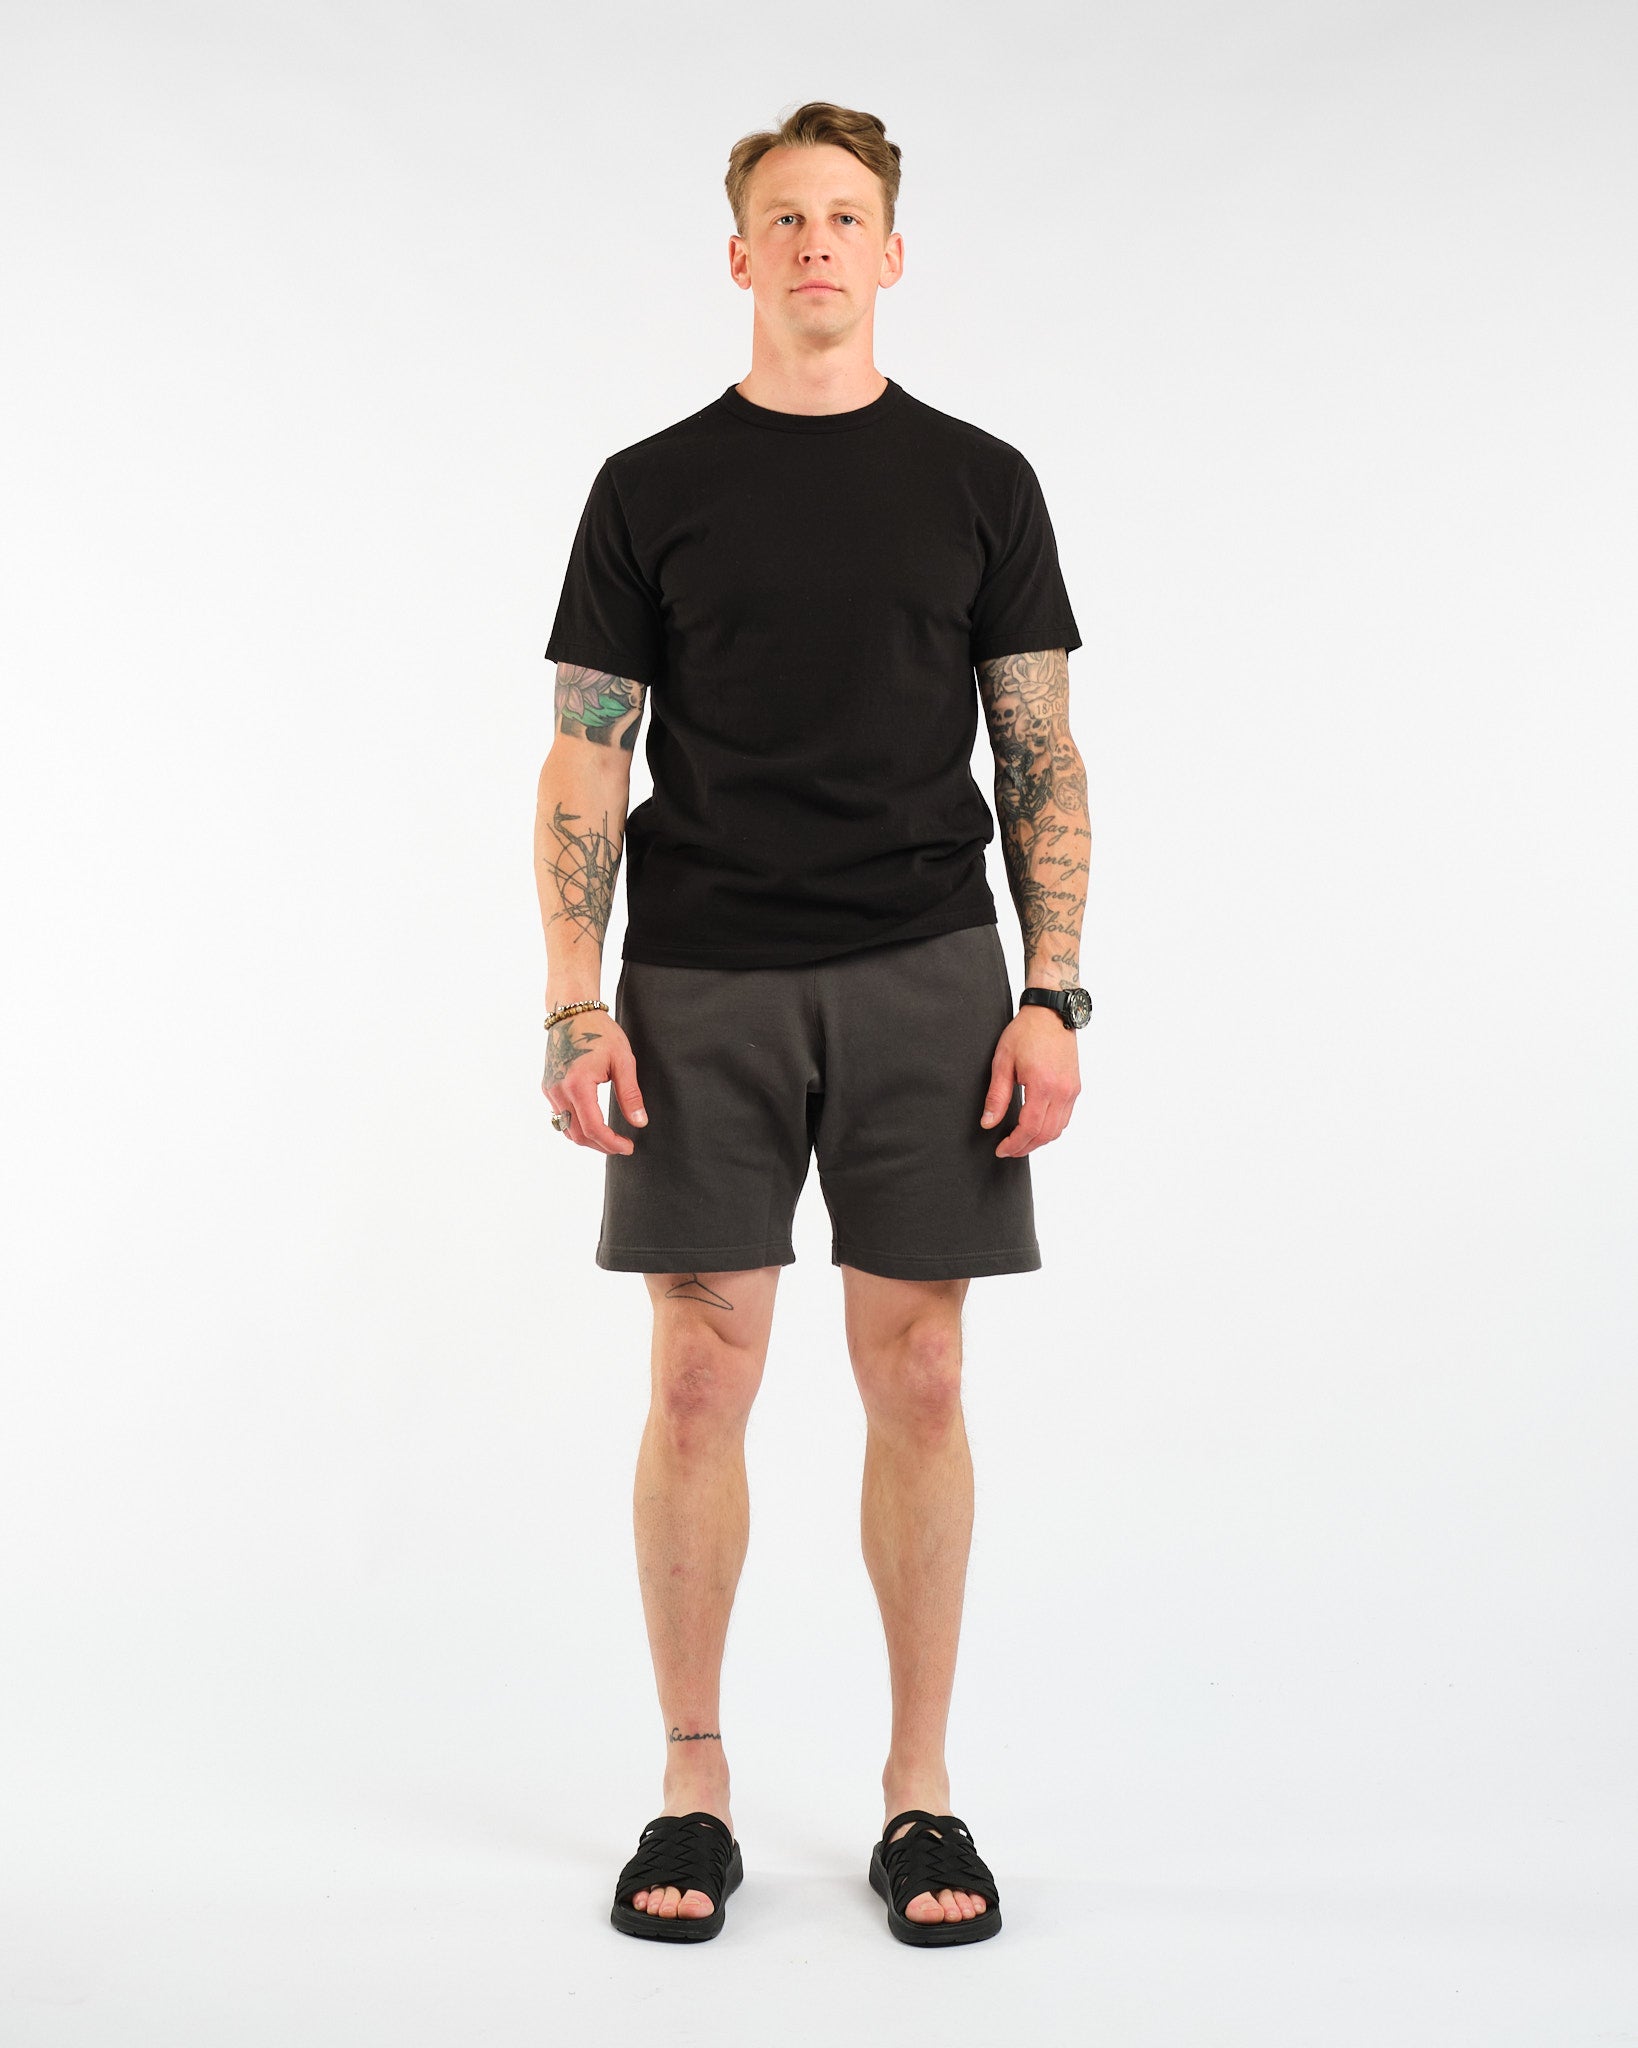 Sweat Shorts Black - Meadow